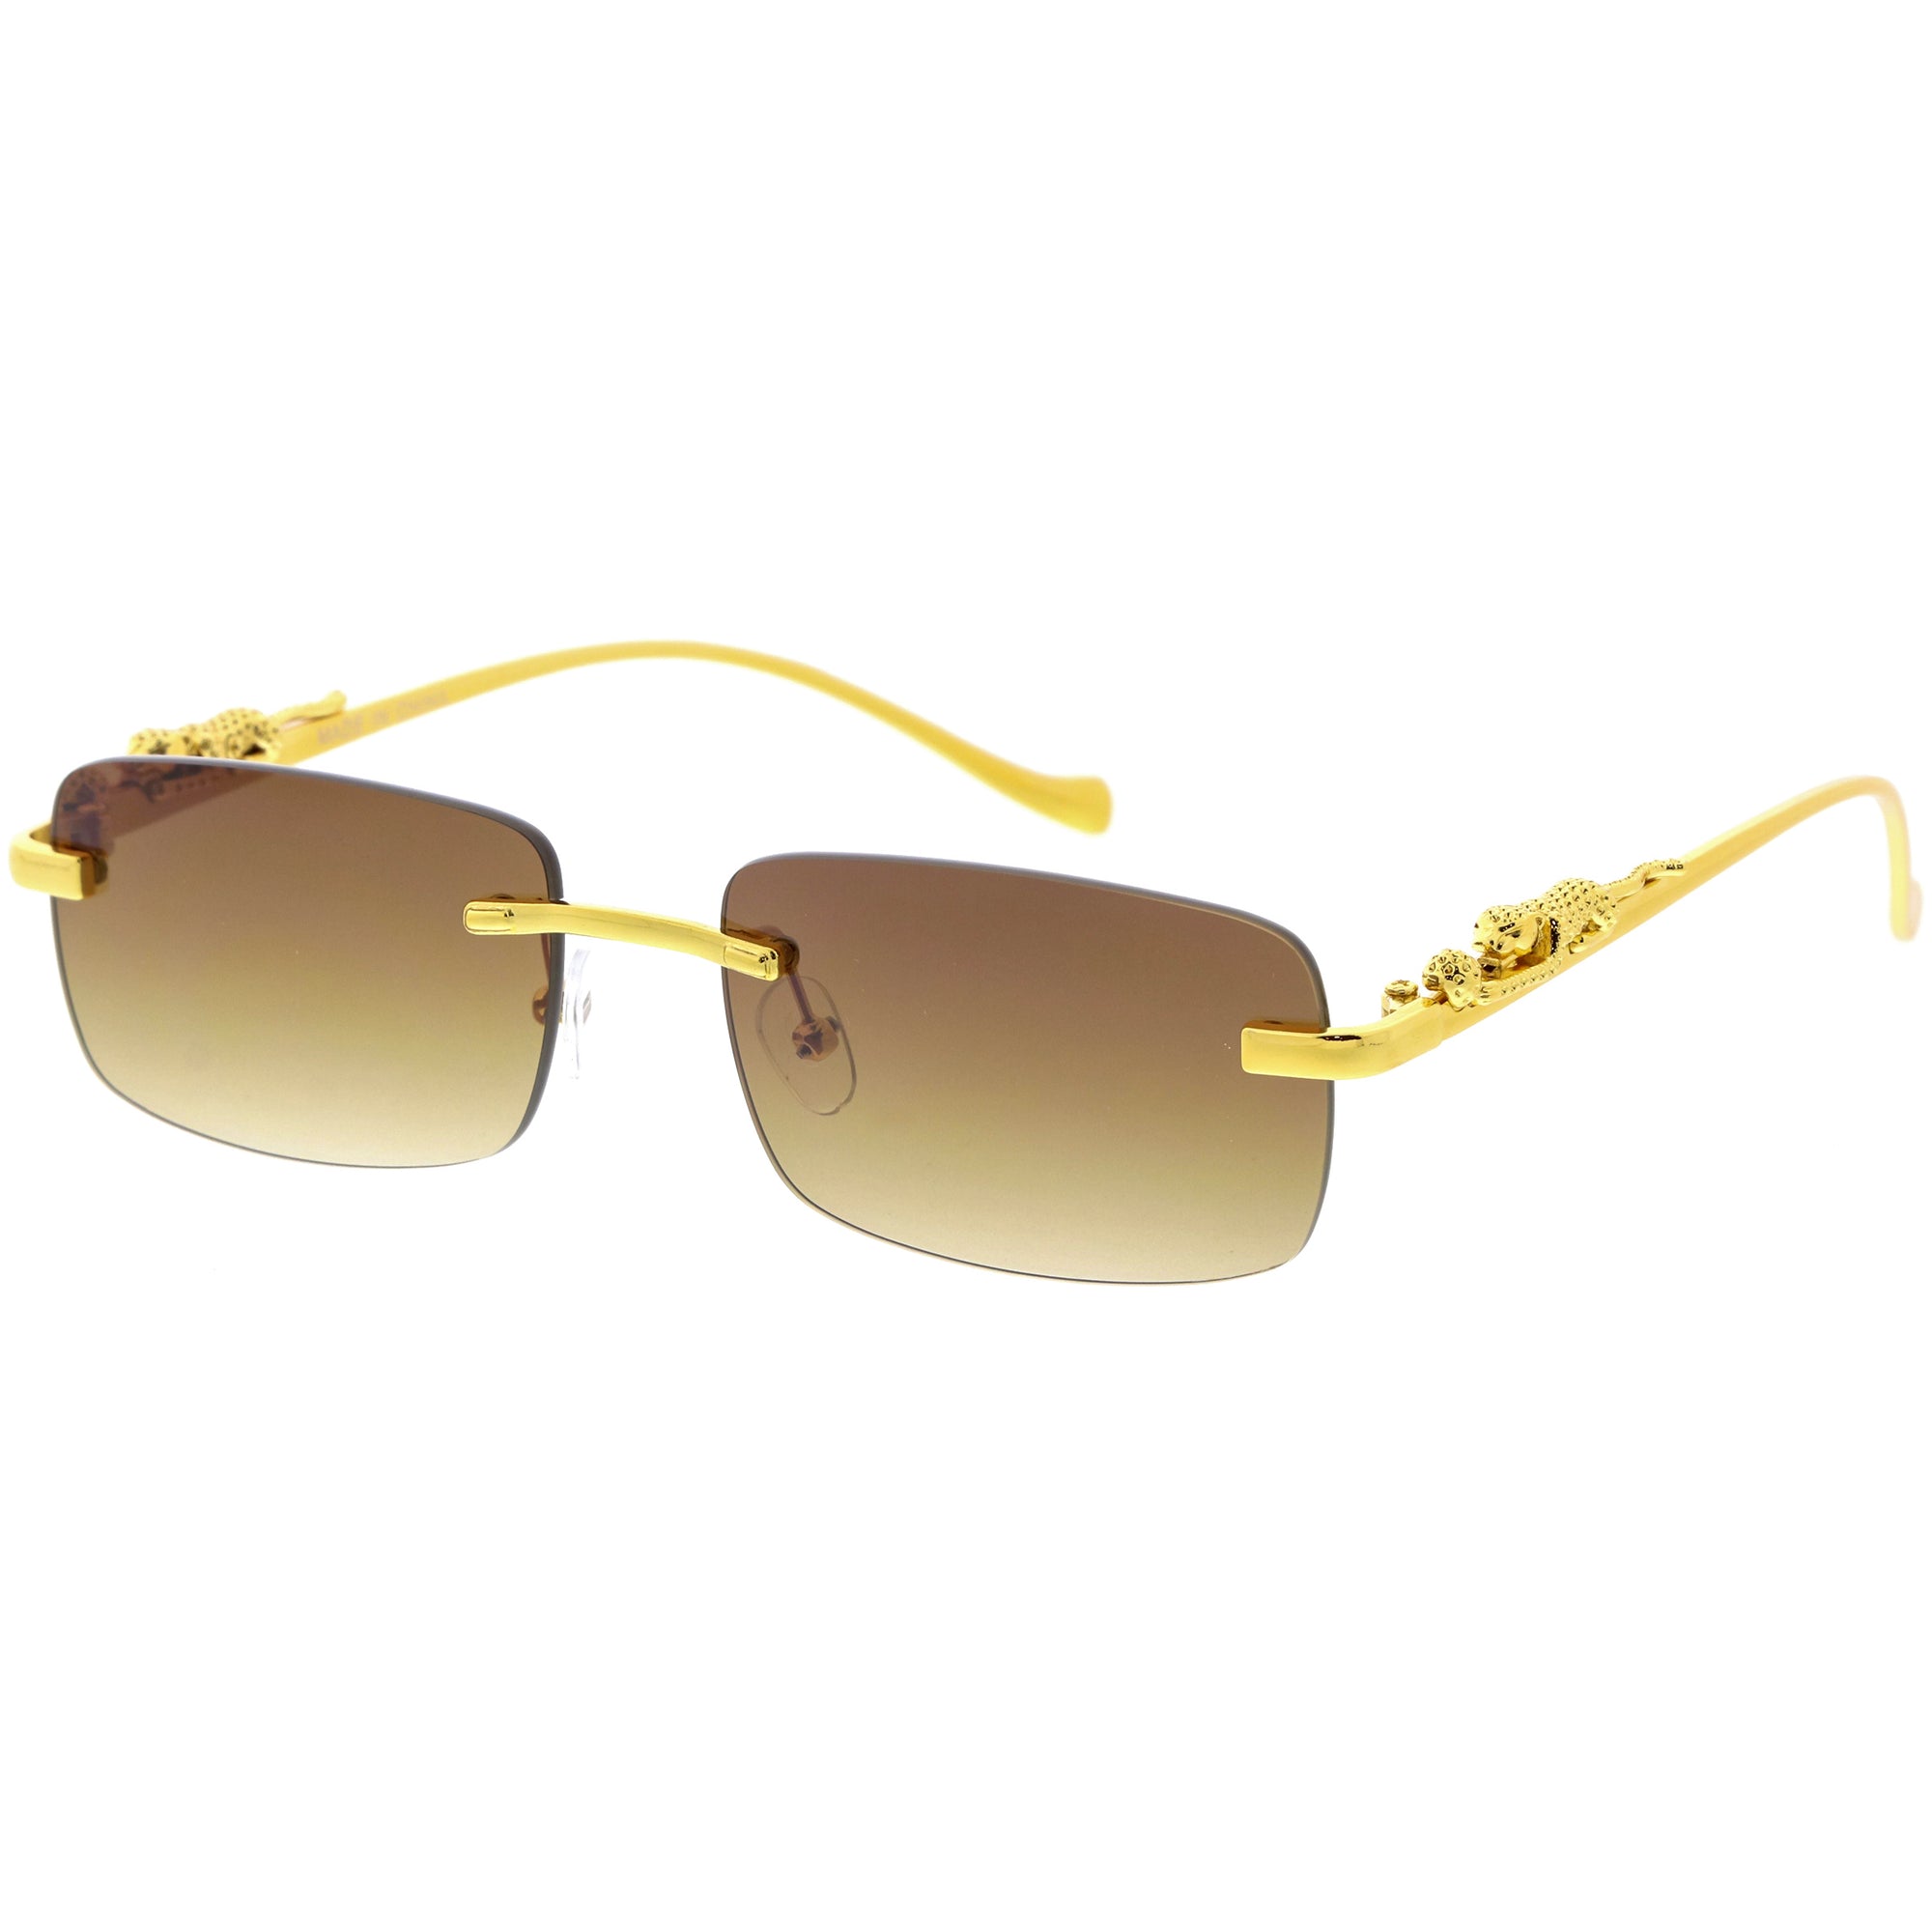 square sunglasses gold